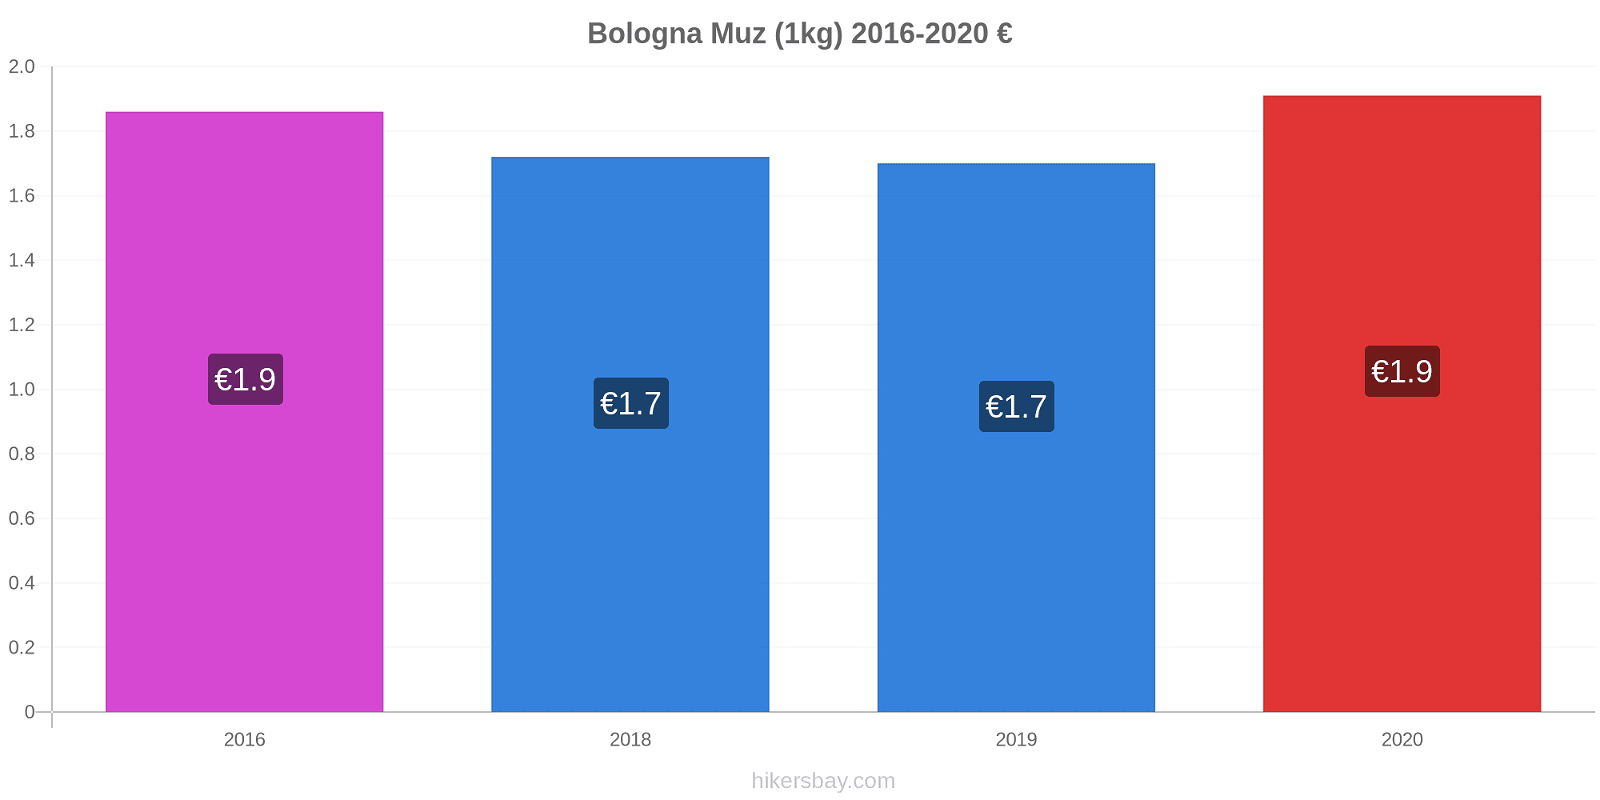 Bologna fiyat değişiklikleri Muz (1kg) hikersbay.com